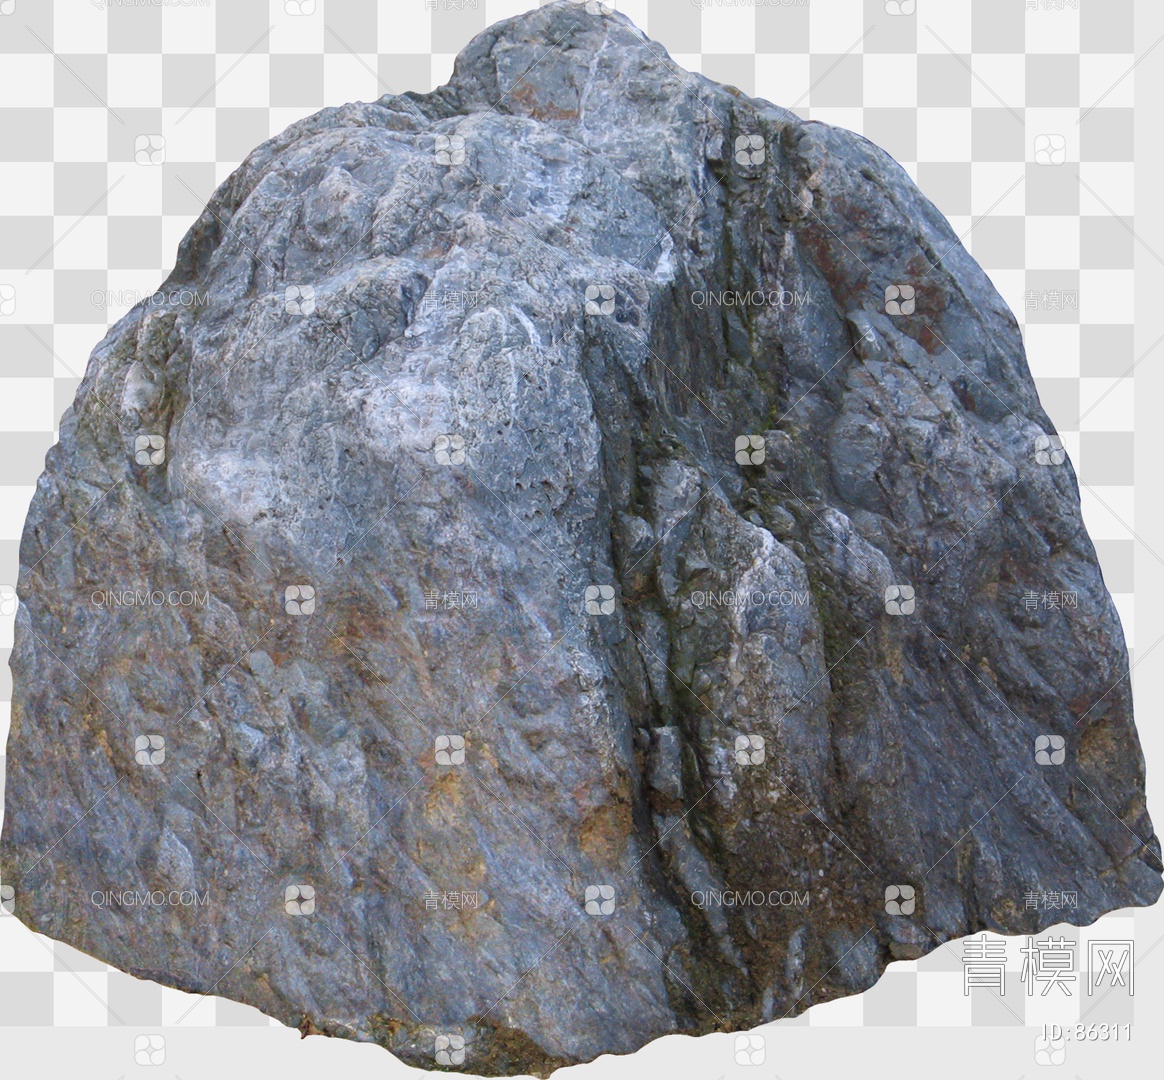 蜂窝状石头章，牛角形状，轻-价格:120元-au23131175-其他奇石/岩石 -加价-7788收藏__收藏热线